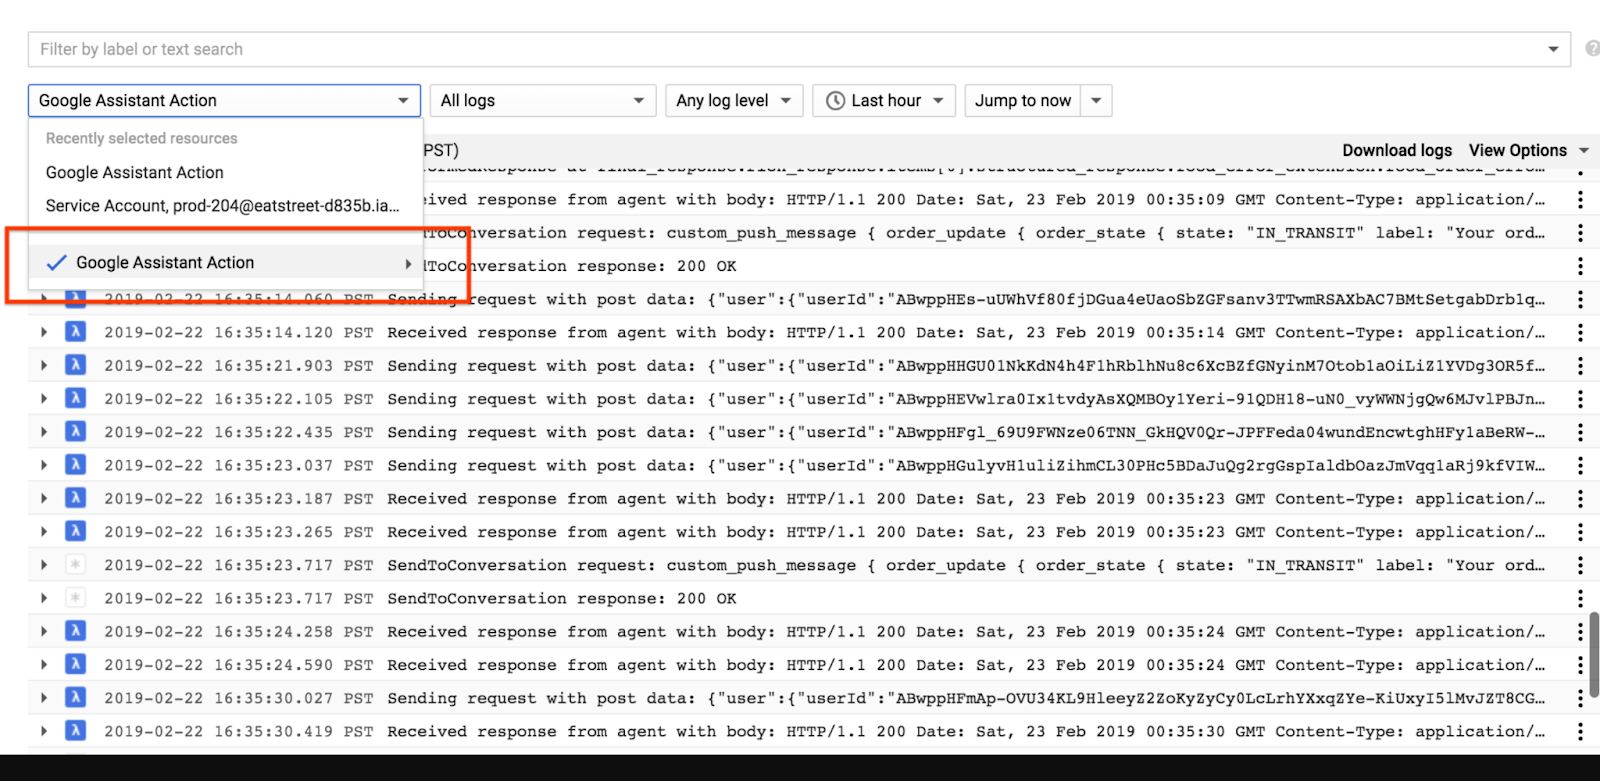 Registros do Stackdriver,
  que mostram a ação do Google Assistente como o recurso selecionado.